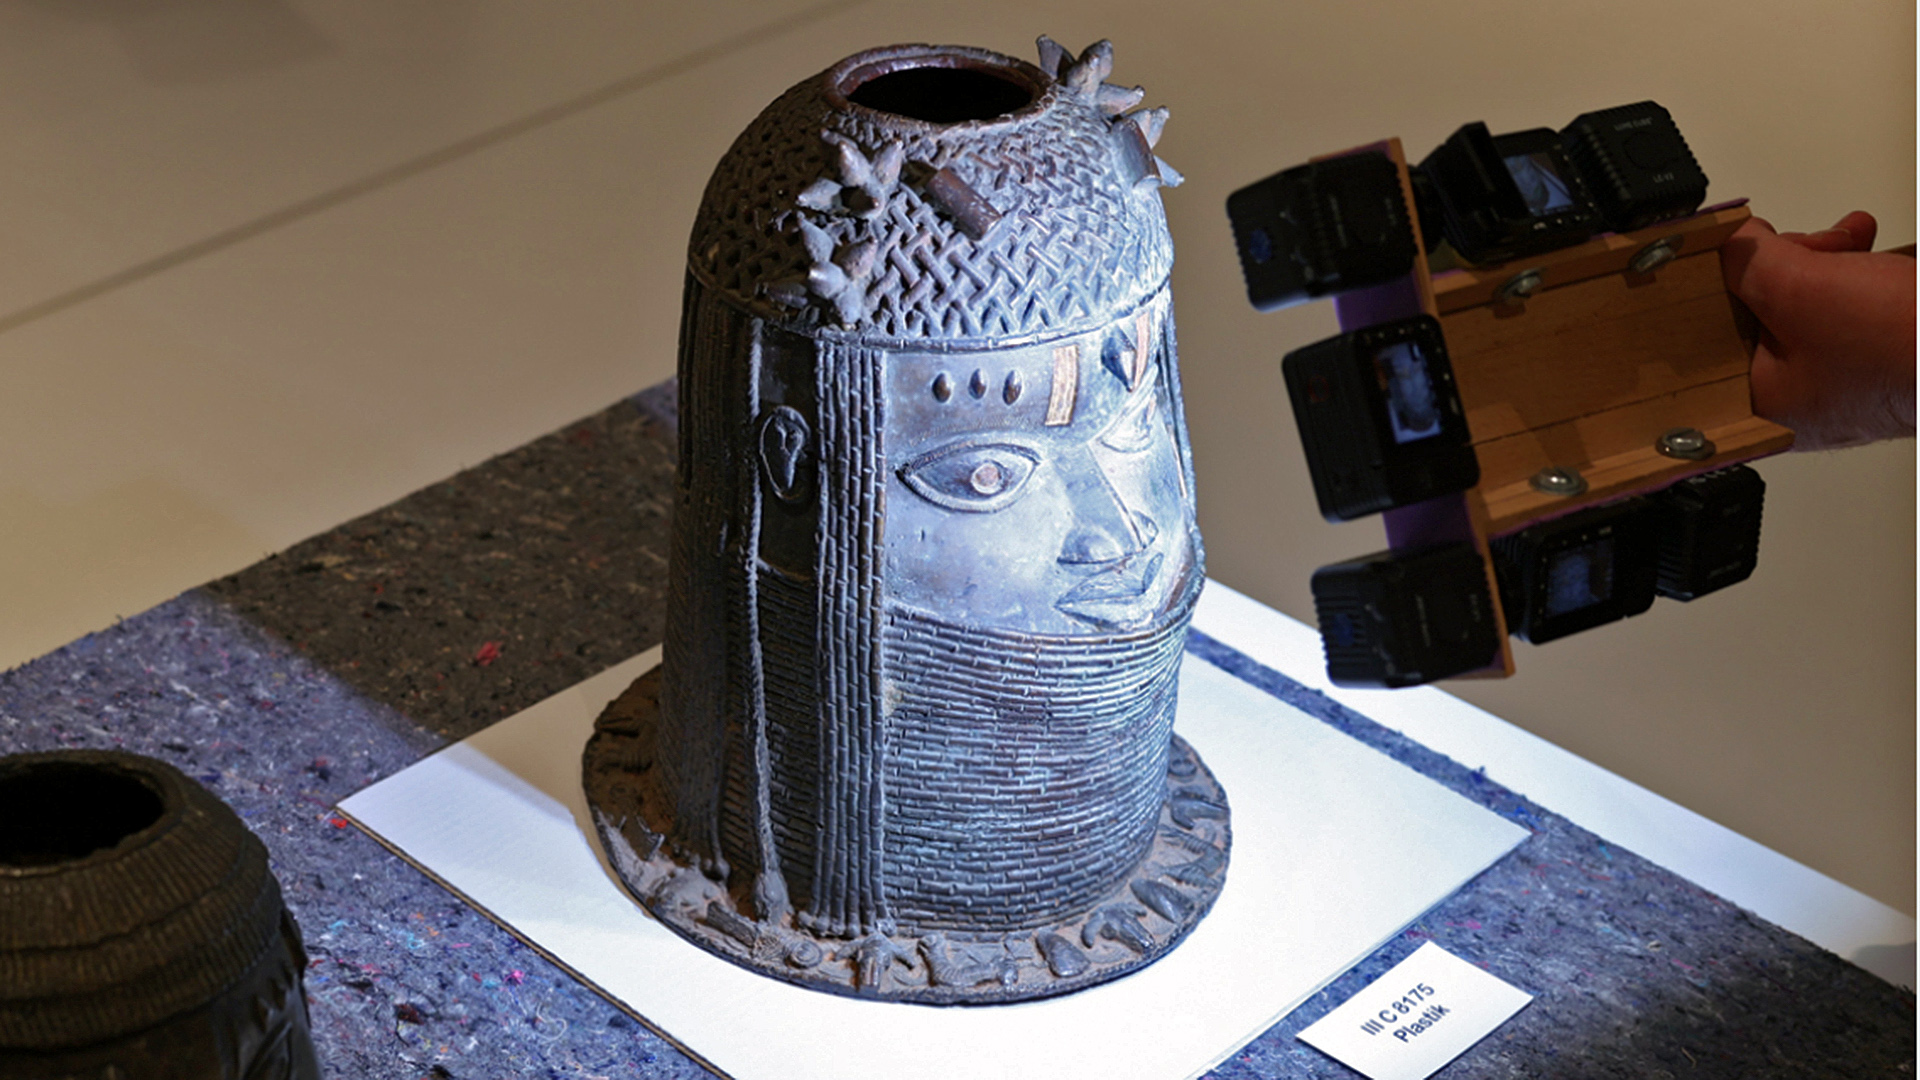 Plastiken der Benin-Bronzen aus der Ausstellung im Humboldt Forum werden gescannt, um sie danach für die Rückgabe nach Nigeria transportfähig zu verpacken.